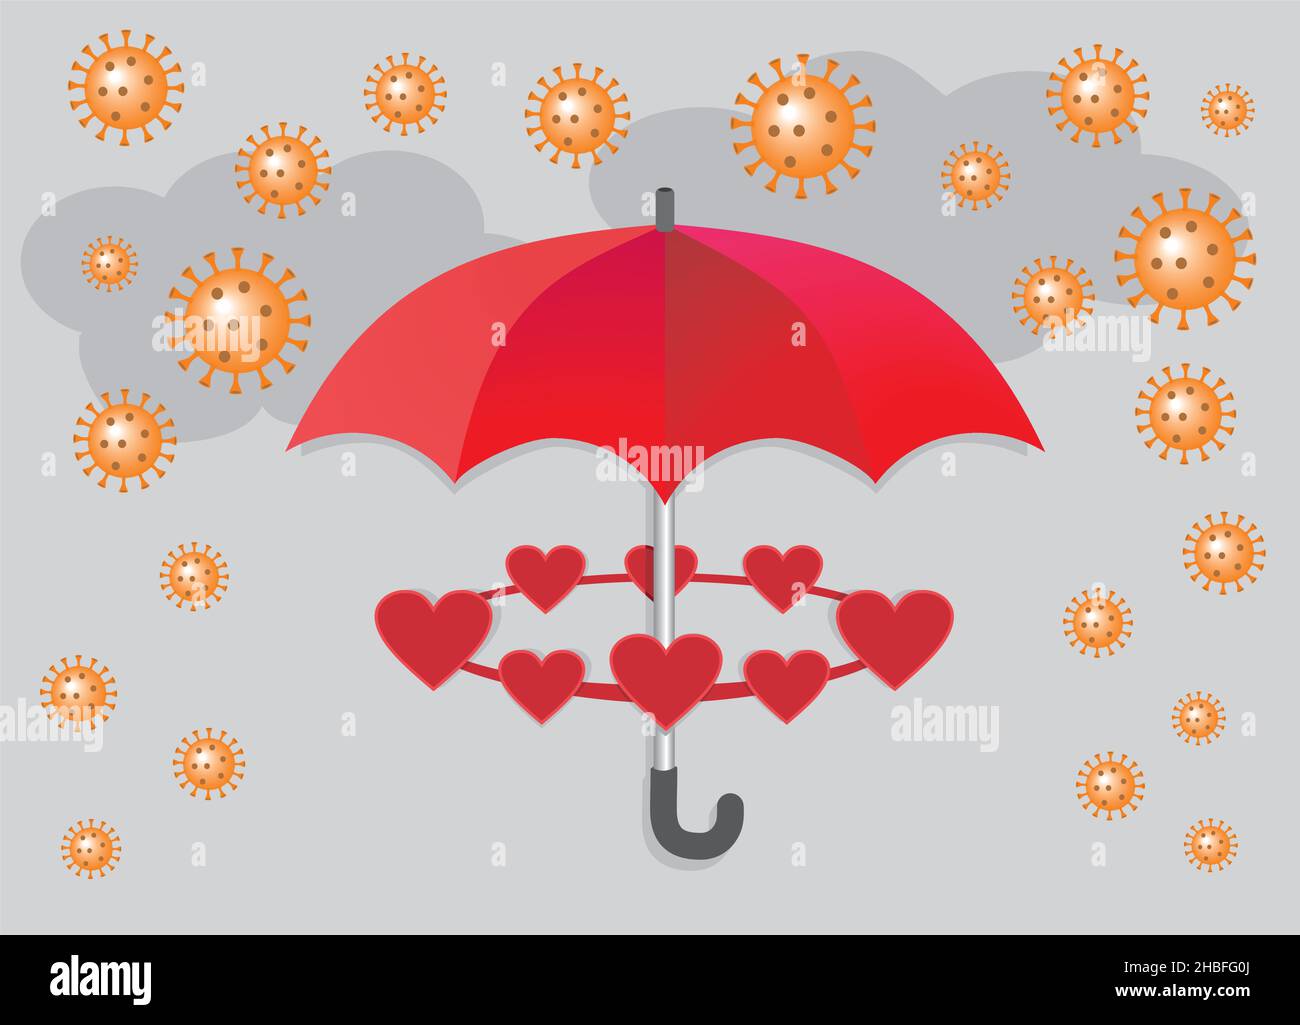 Roter Regenschirm mit Herzen, die gegen Coronavirus schützen. Vektorgrafik. EPS10. Stock Vektor